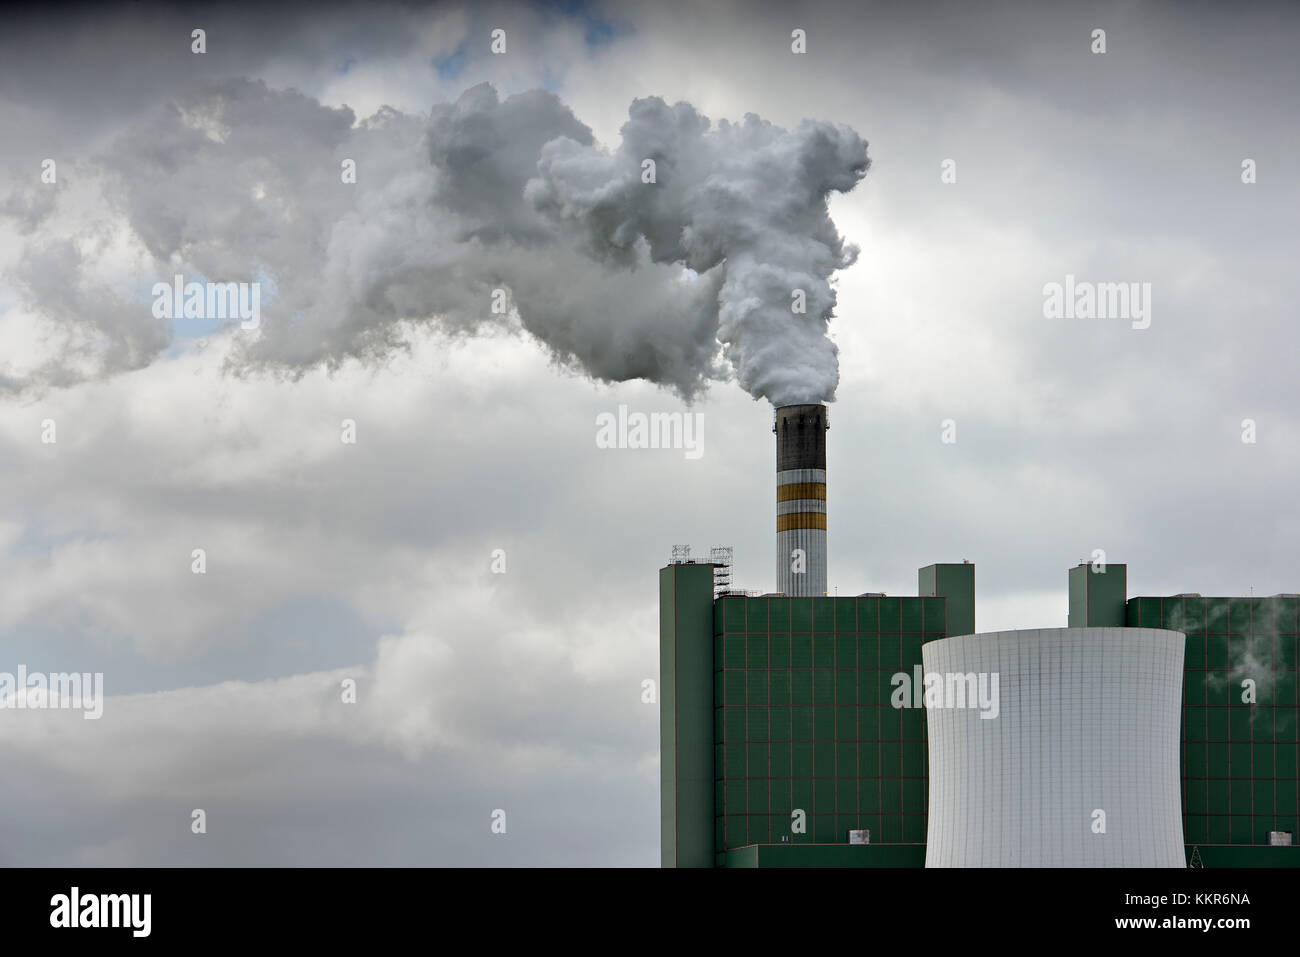 Braunkohlekraftwerk in Schkopau, rauchenden Schornstein, CO2-Problem, skopau, Sachsen - Anhalt, Deutschland Stockfoto